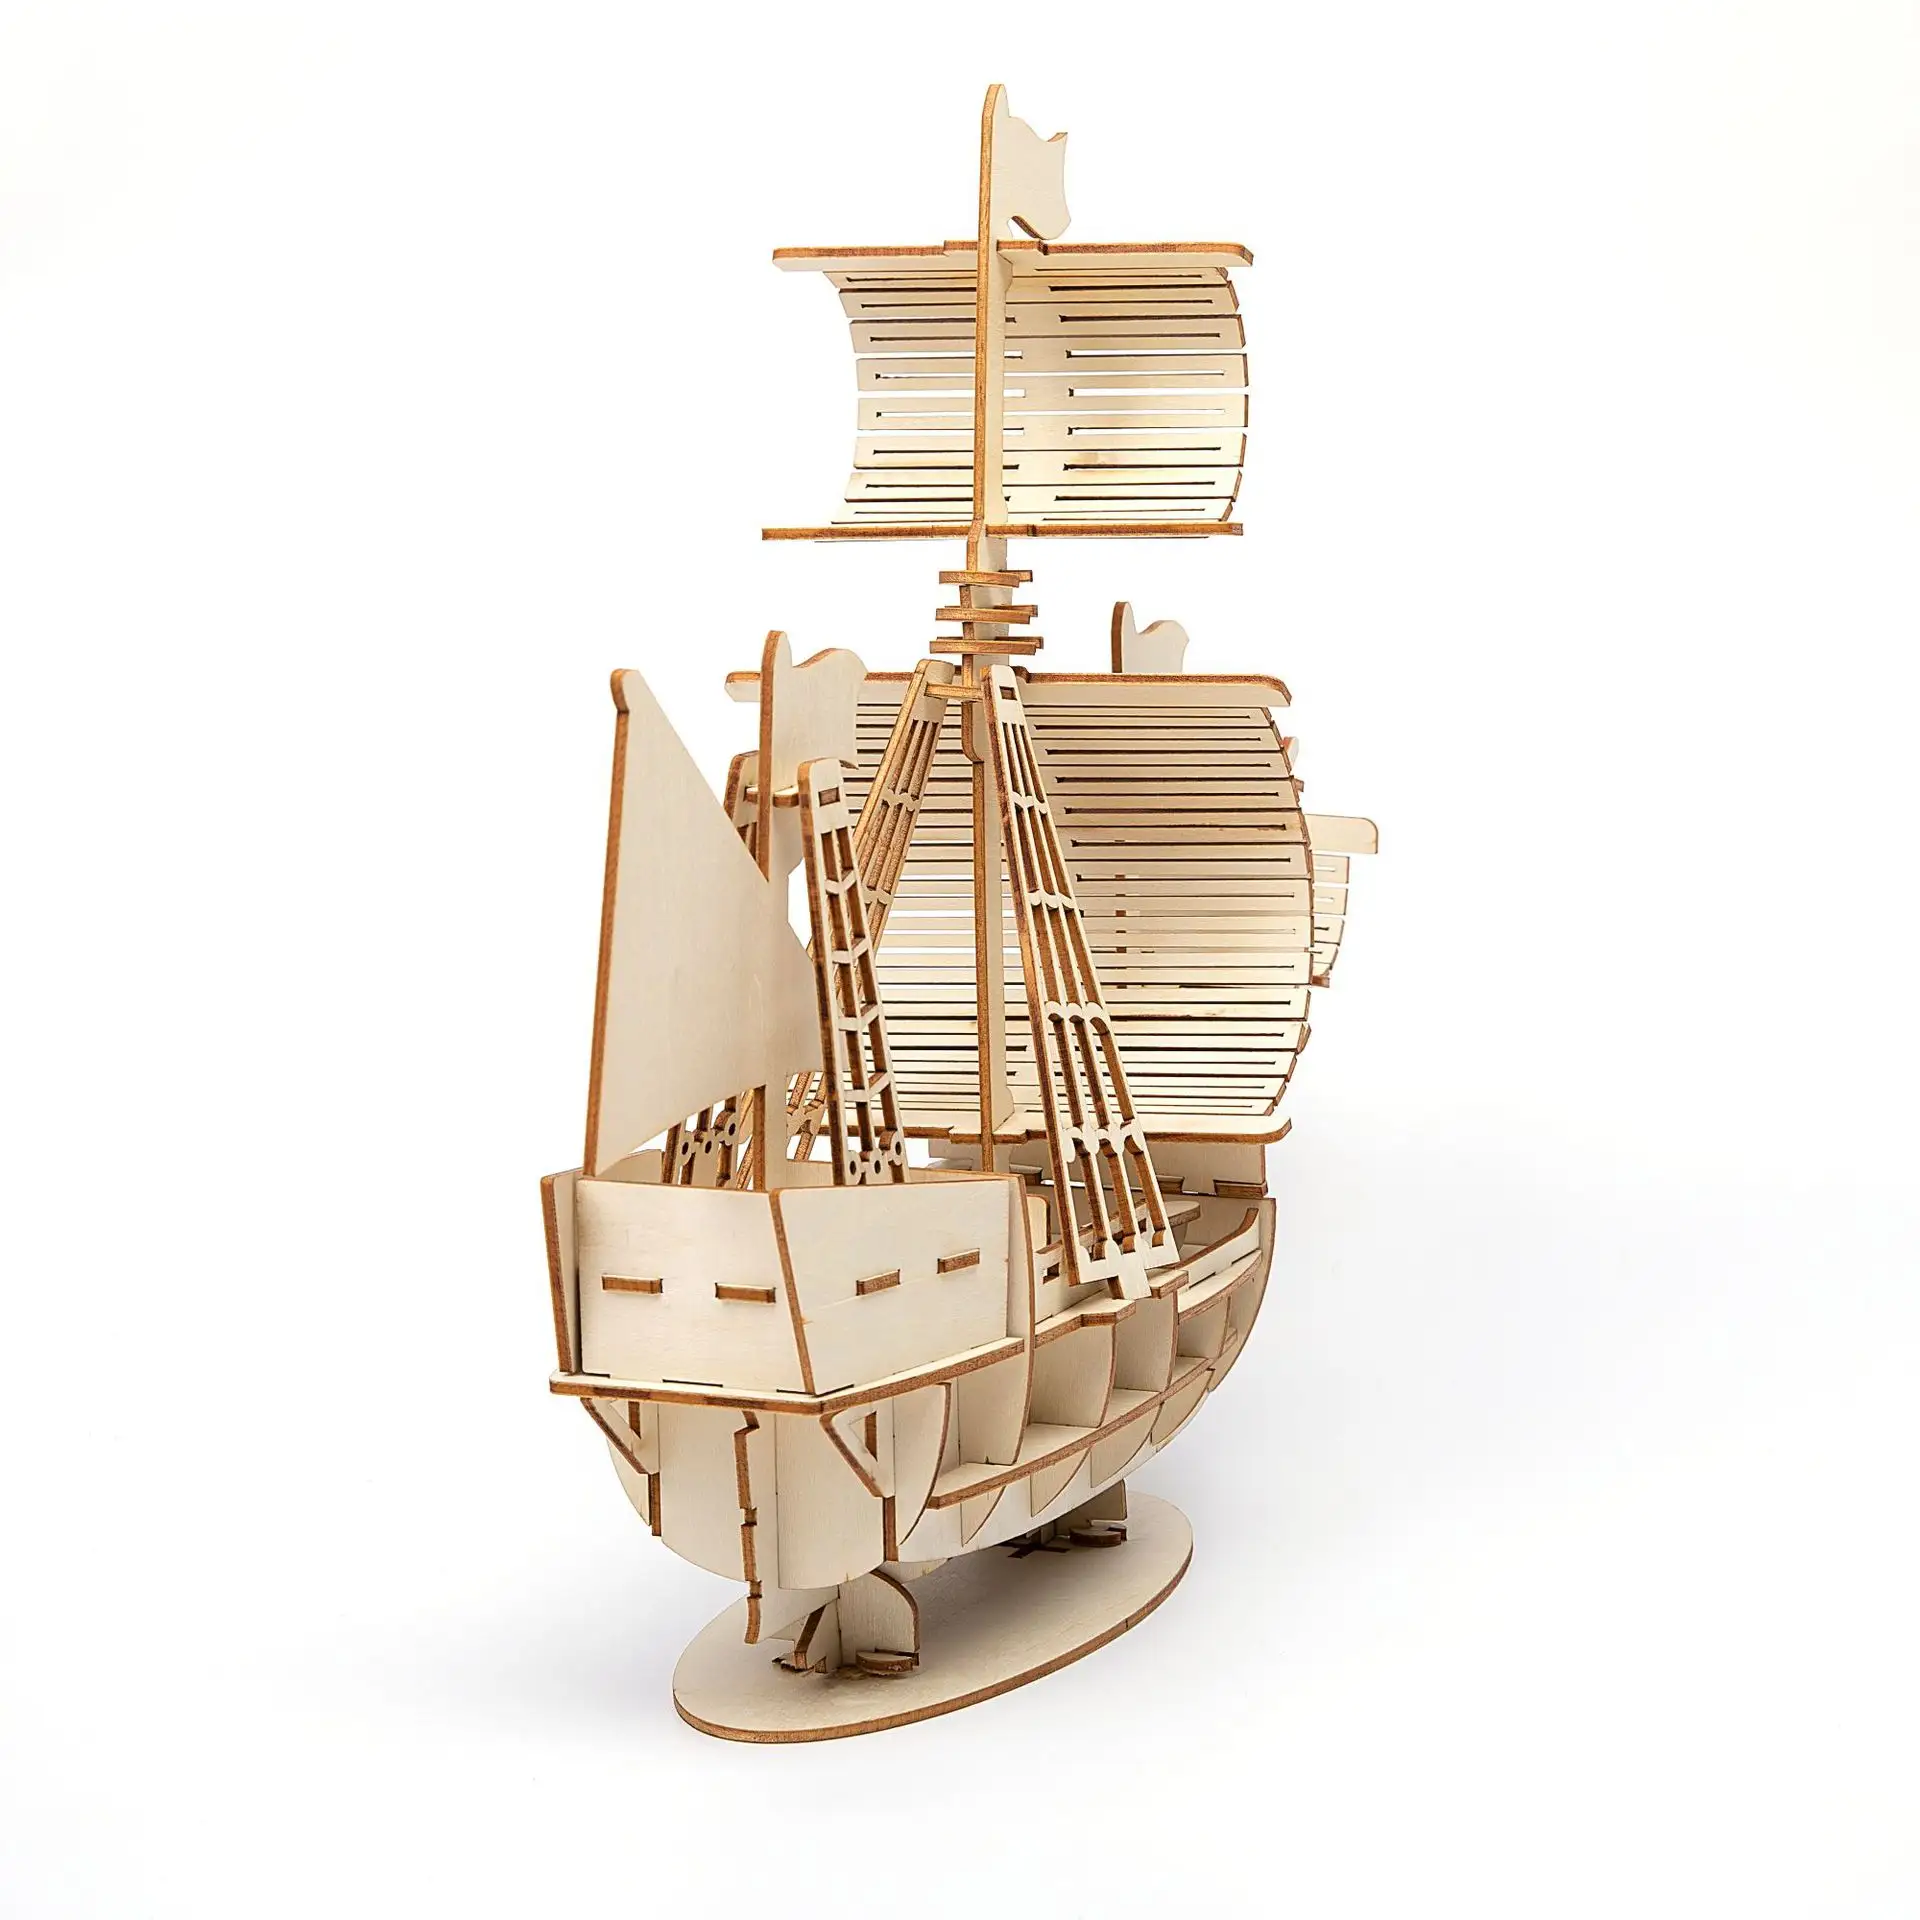 จิ๊กซอว์ไม้รูปเรือใบที่สวยงามของเล่นสำหรับเด็ก3D ไม้อัดตัดด้วยเลเซอร์